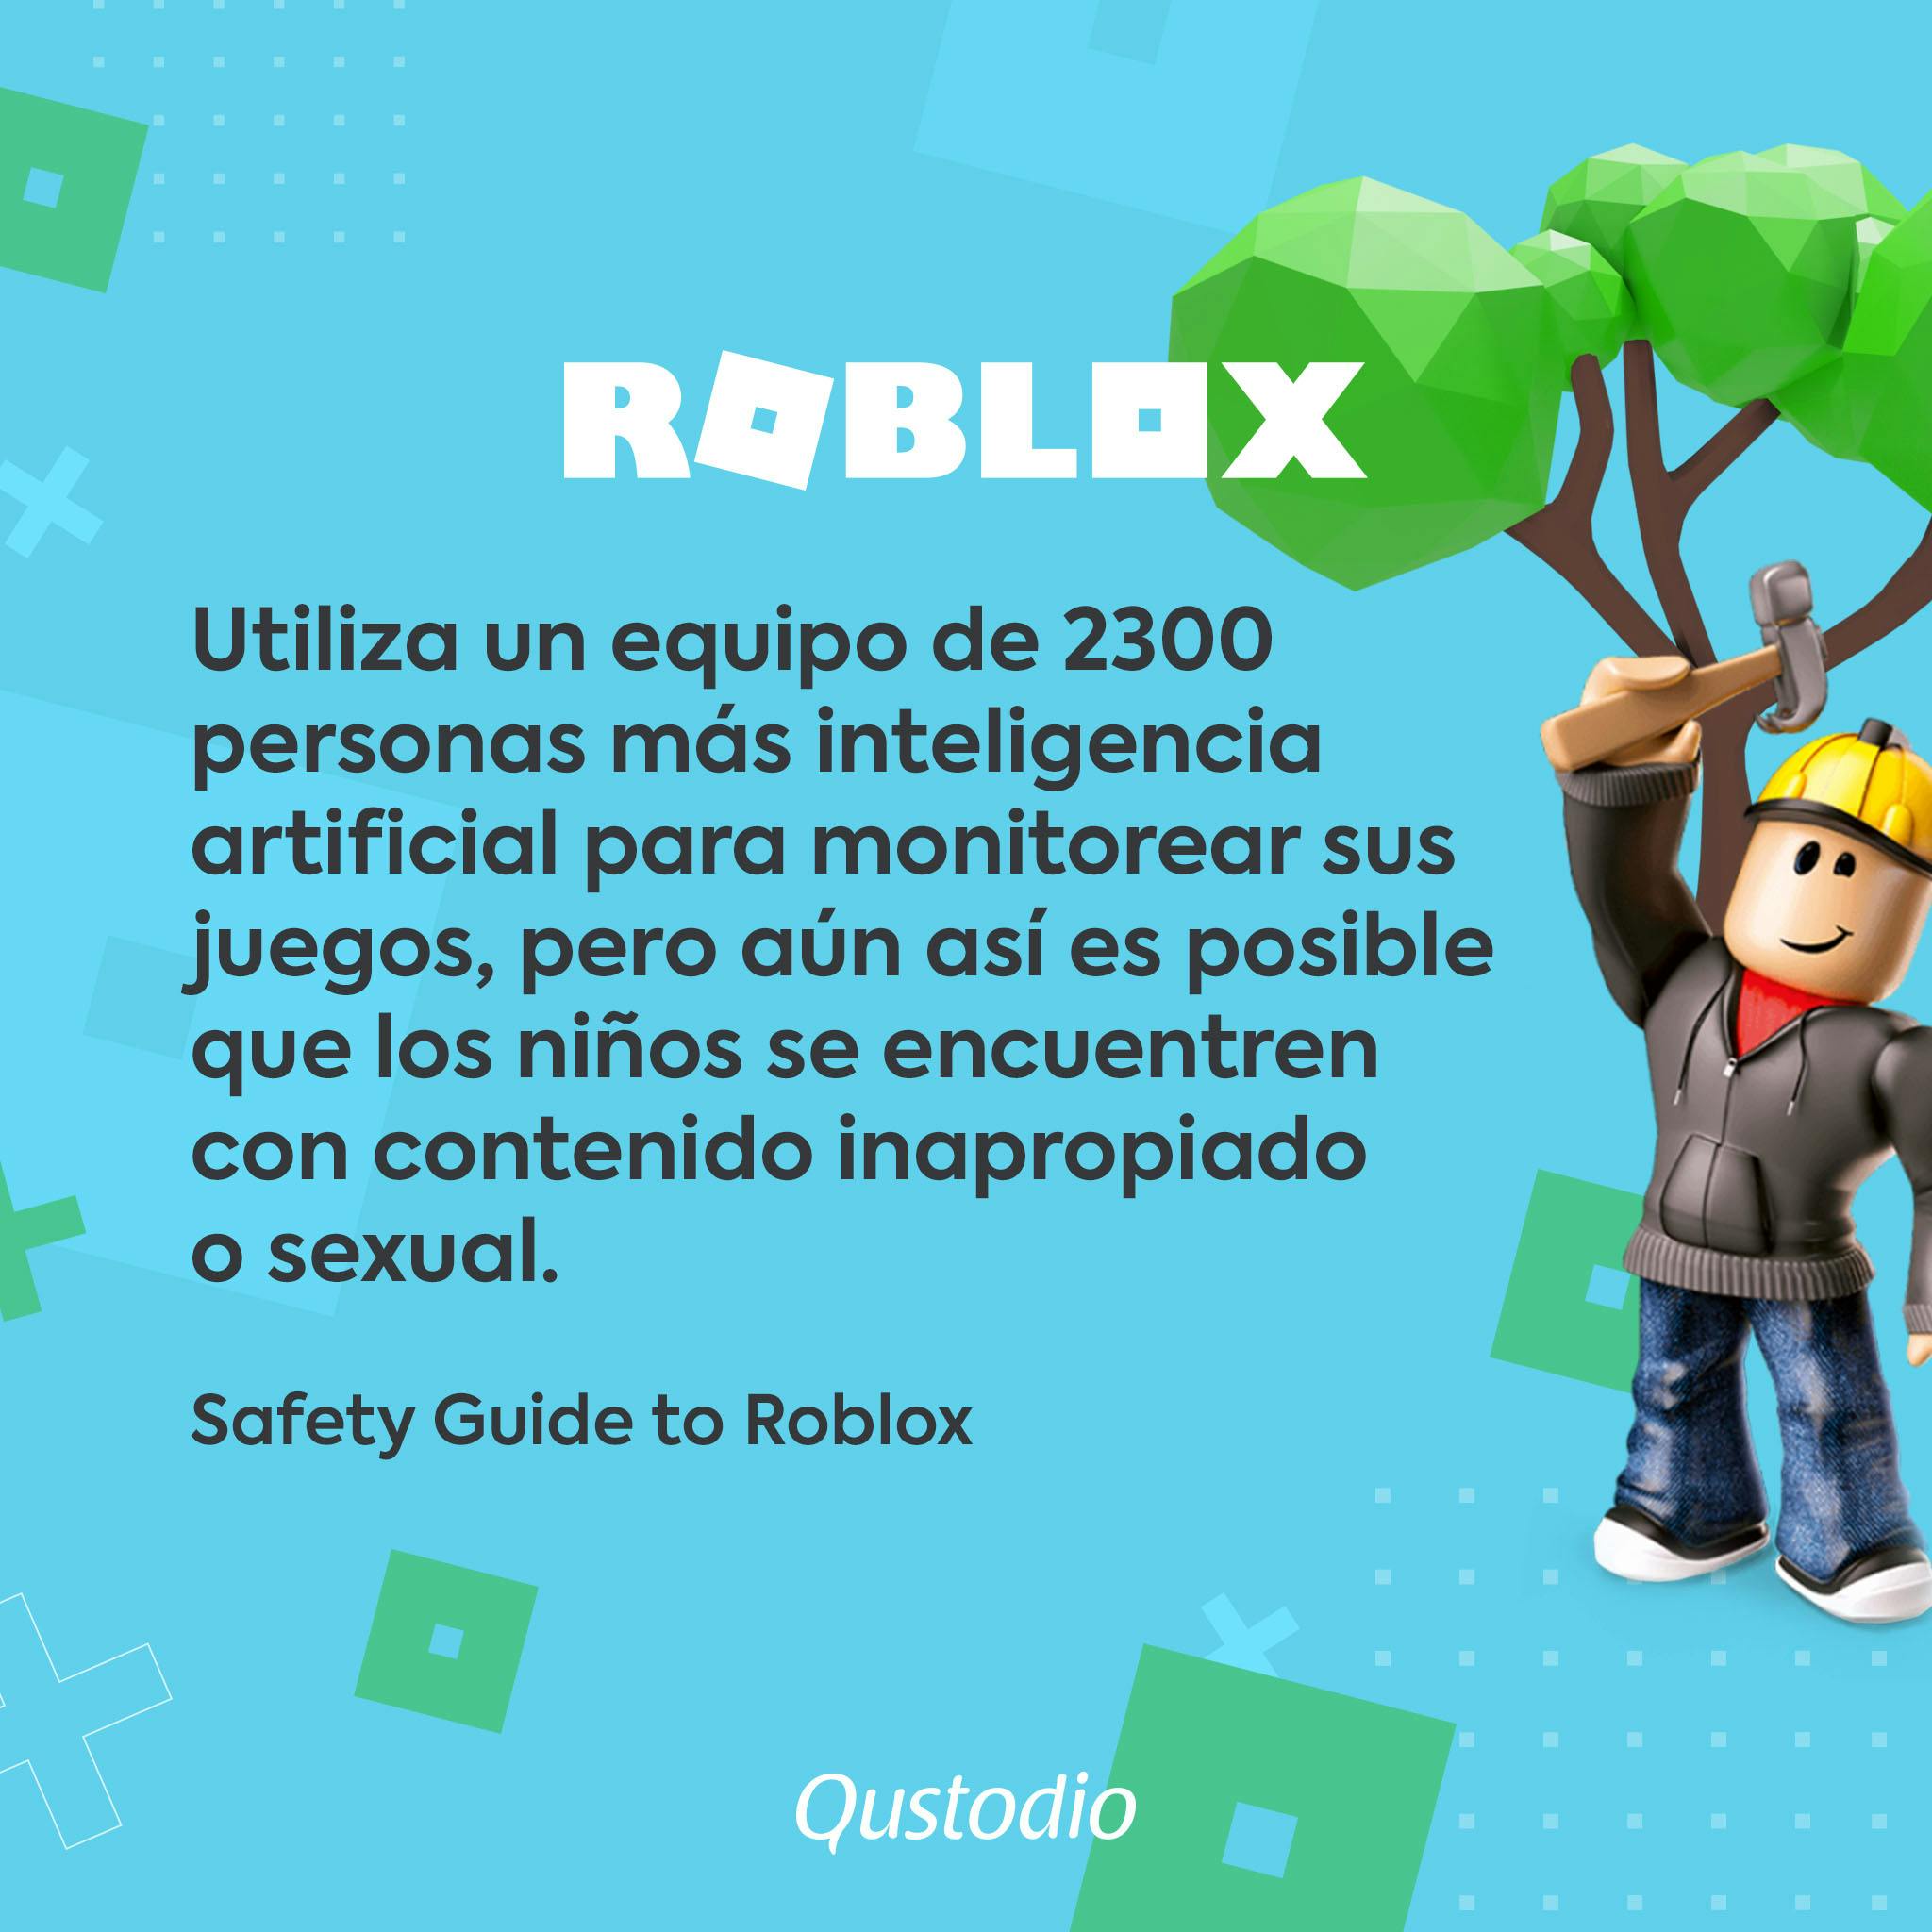 Es Roblox Seguro Para Nuestros Hijos Qustodio - q pasa si compras robux sin tus datos verdaderos